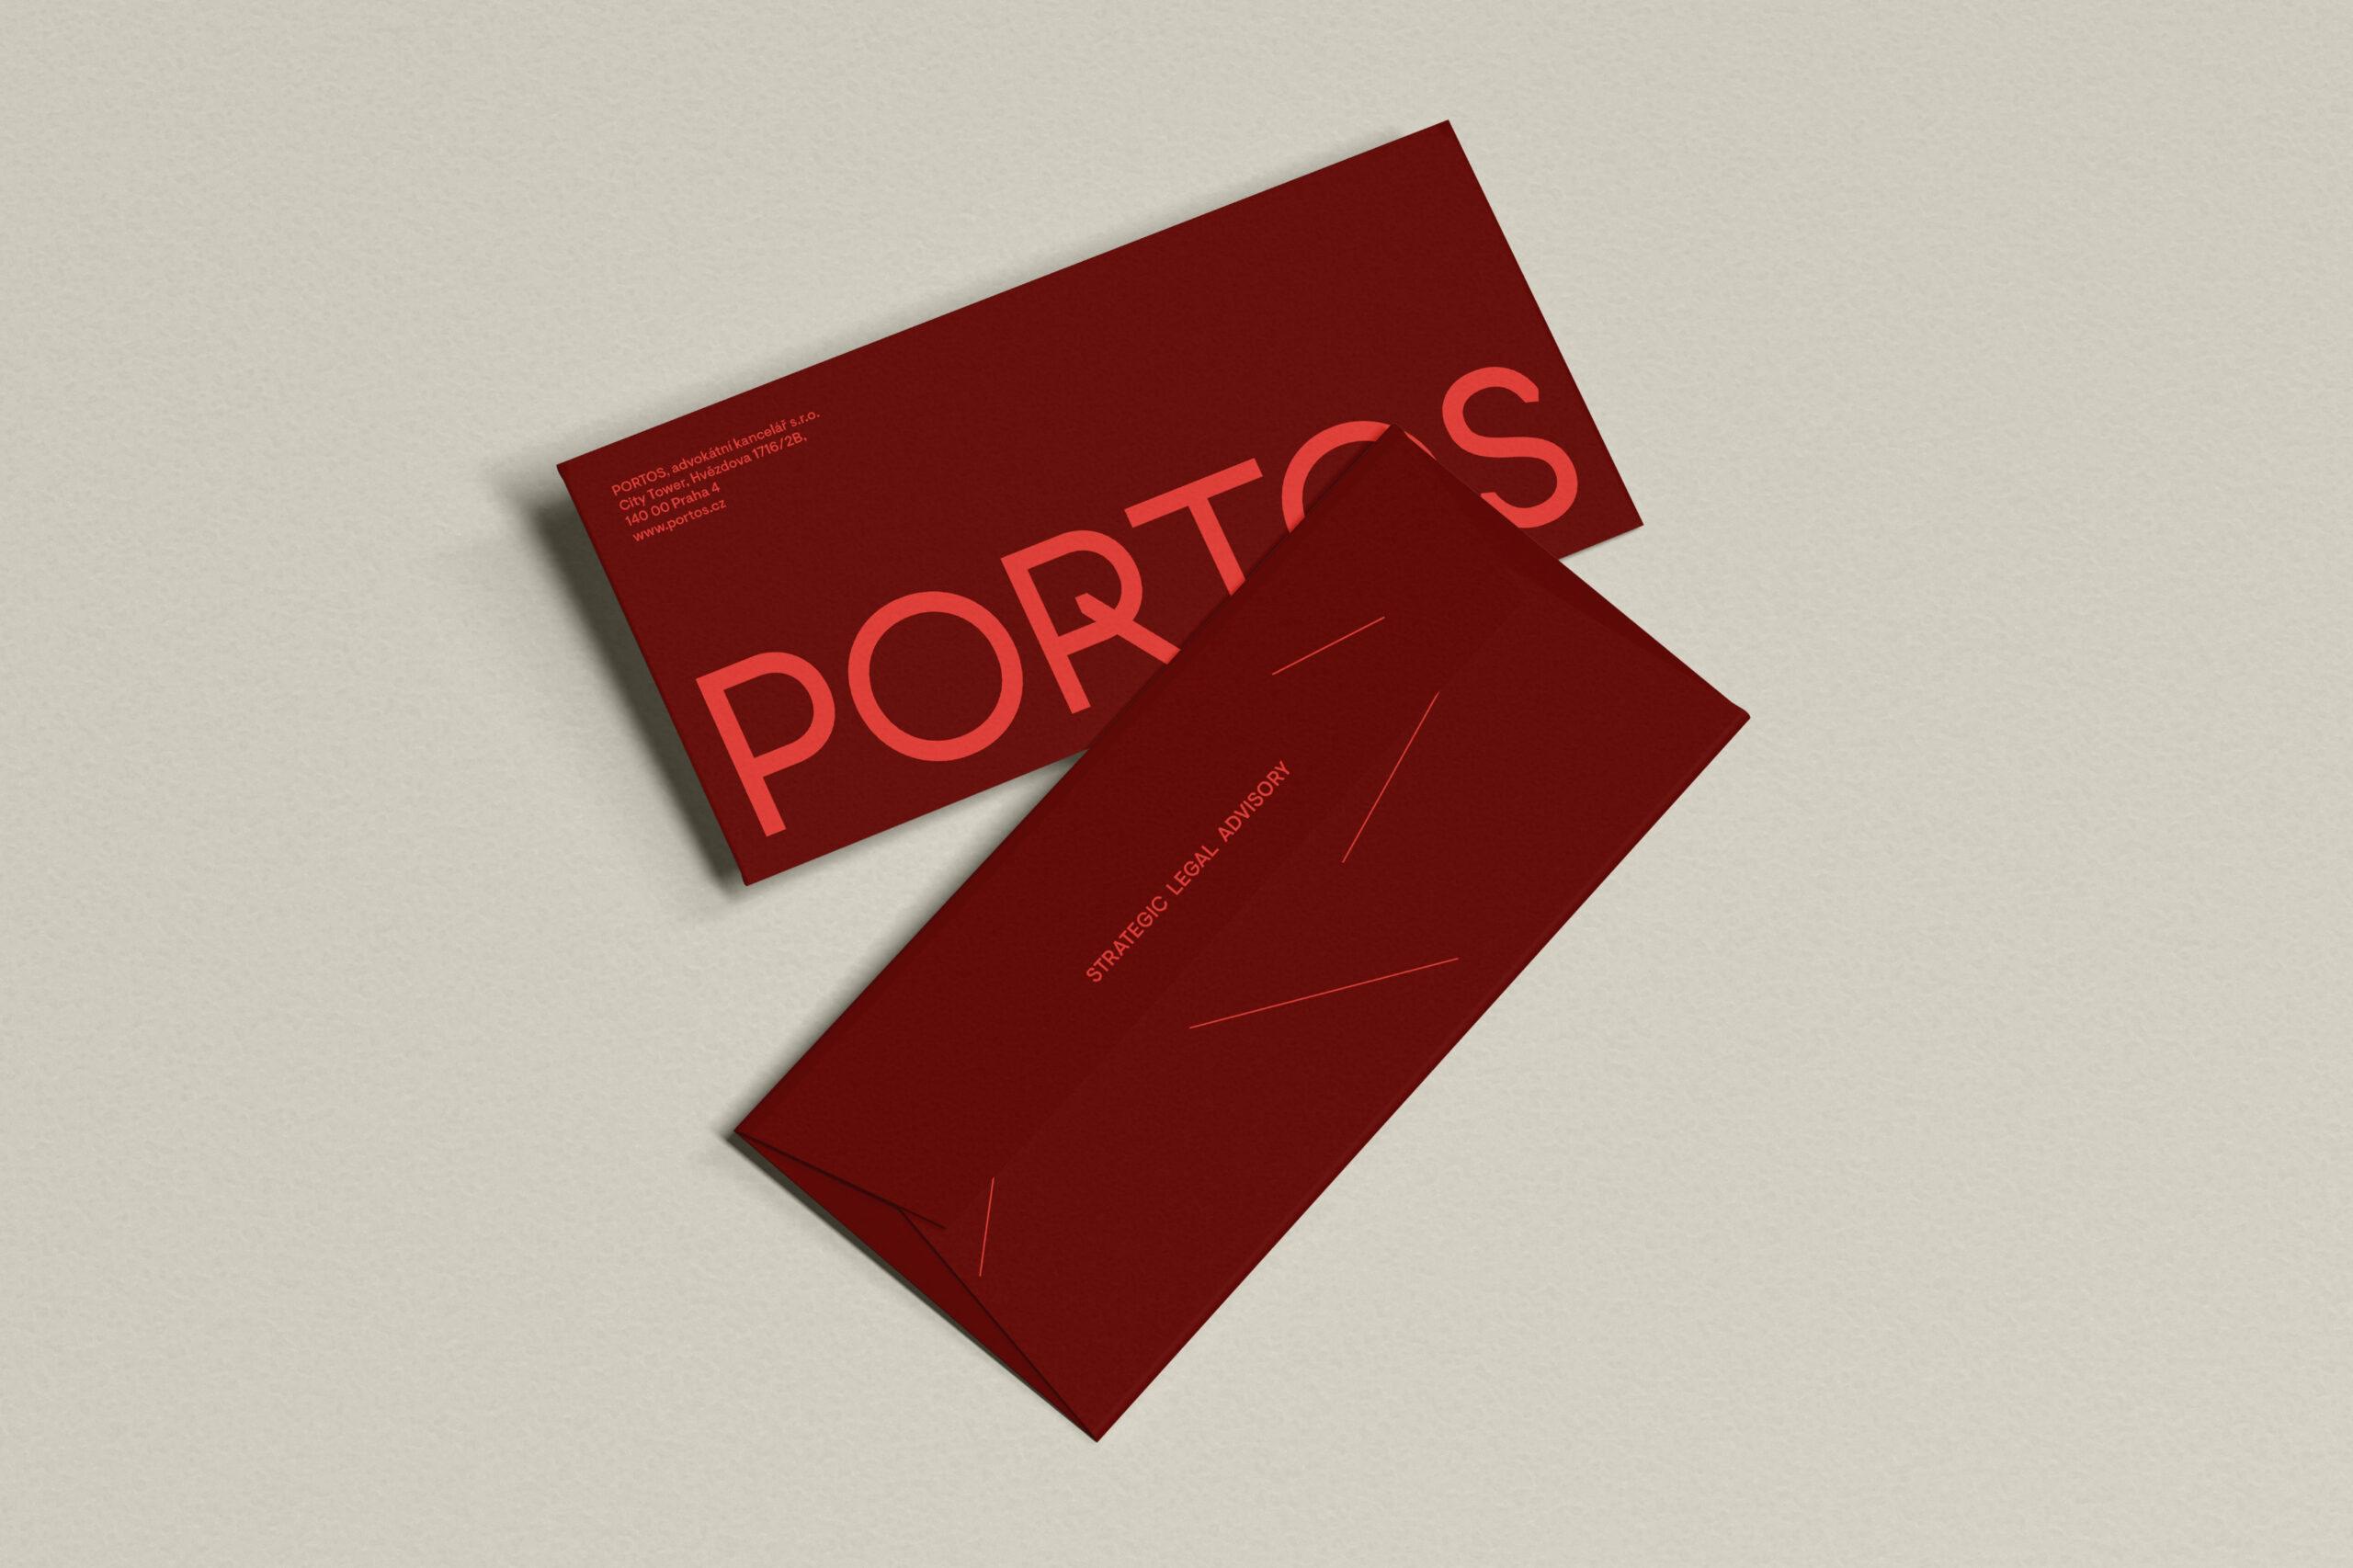 Web_Portos-–-3